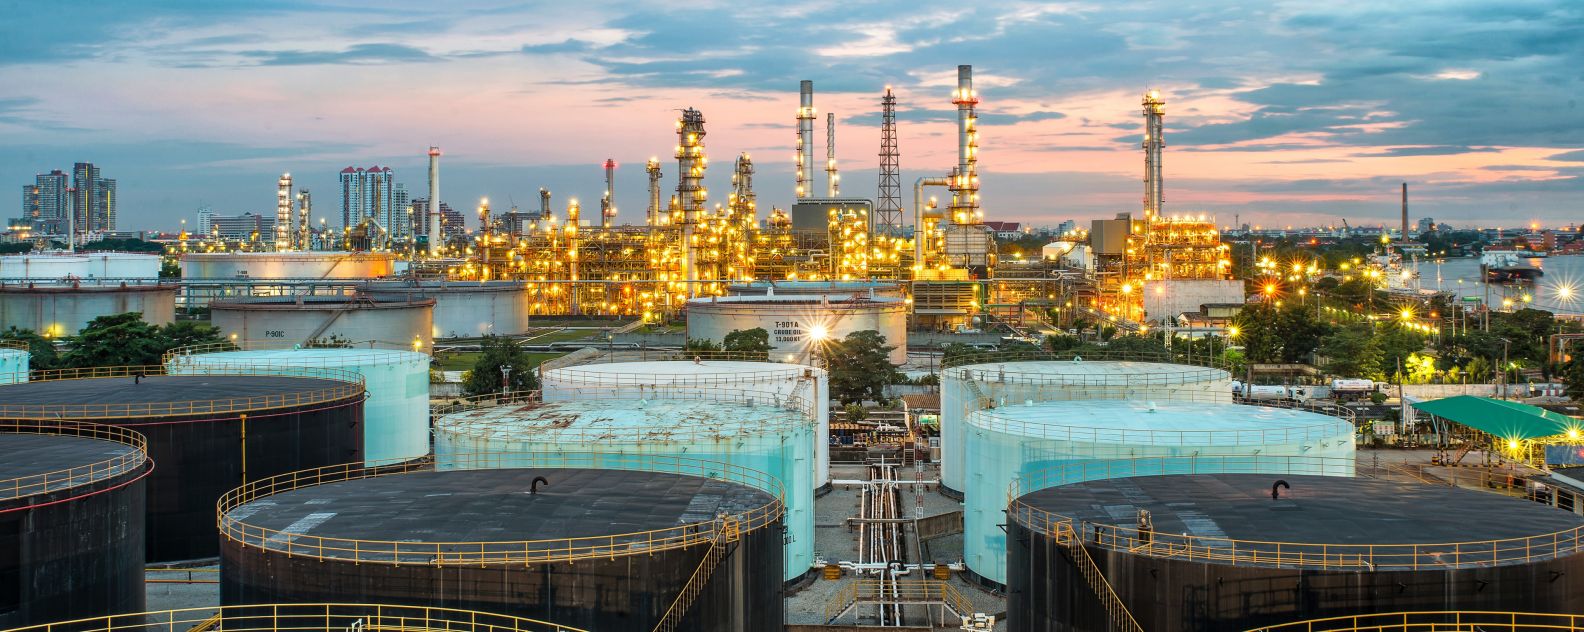 Photo aérienne d'une raffinerie de pétrole